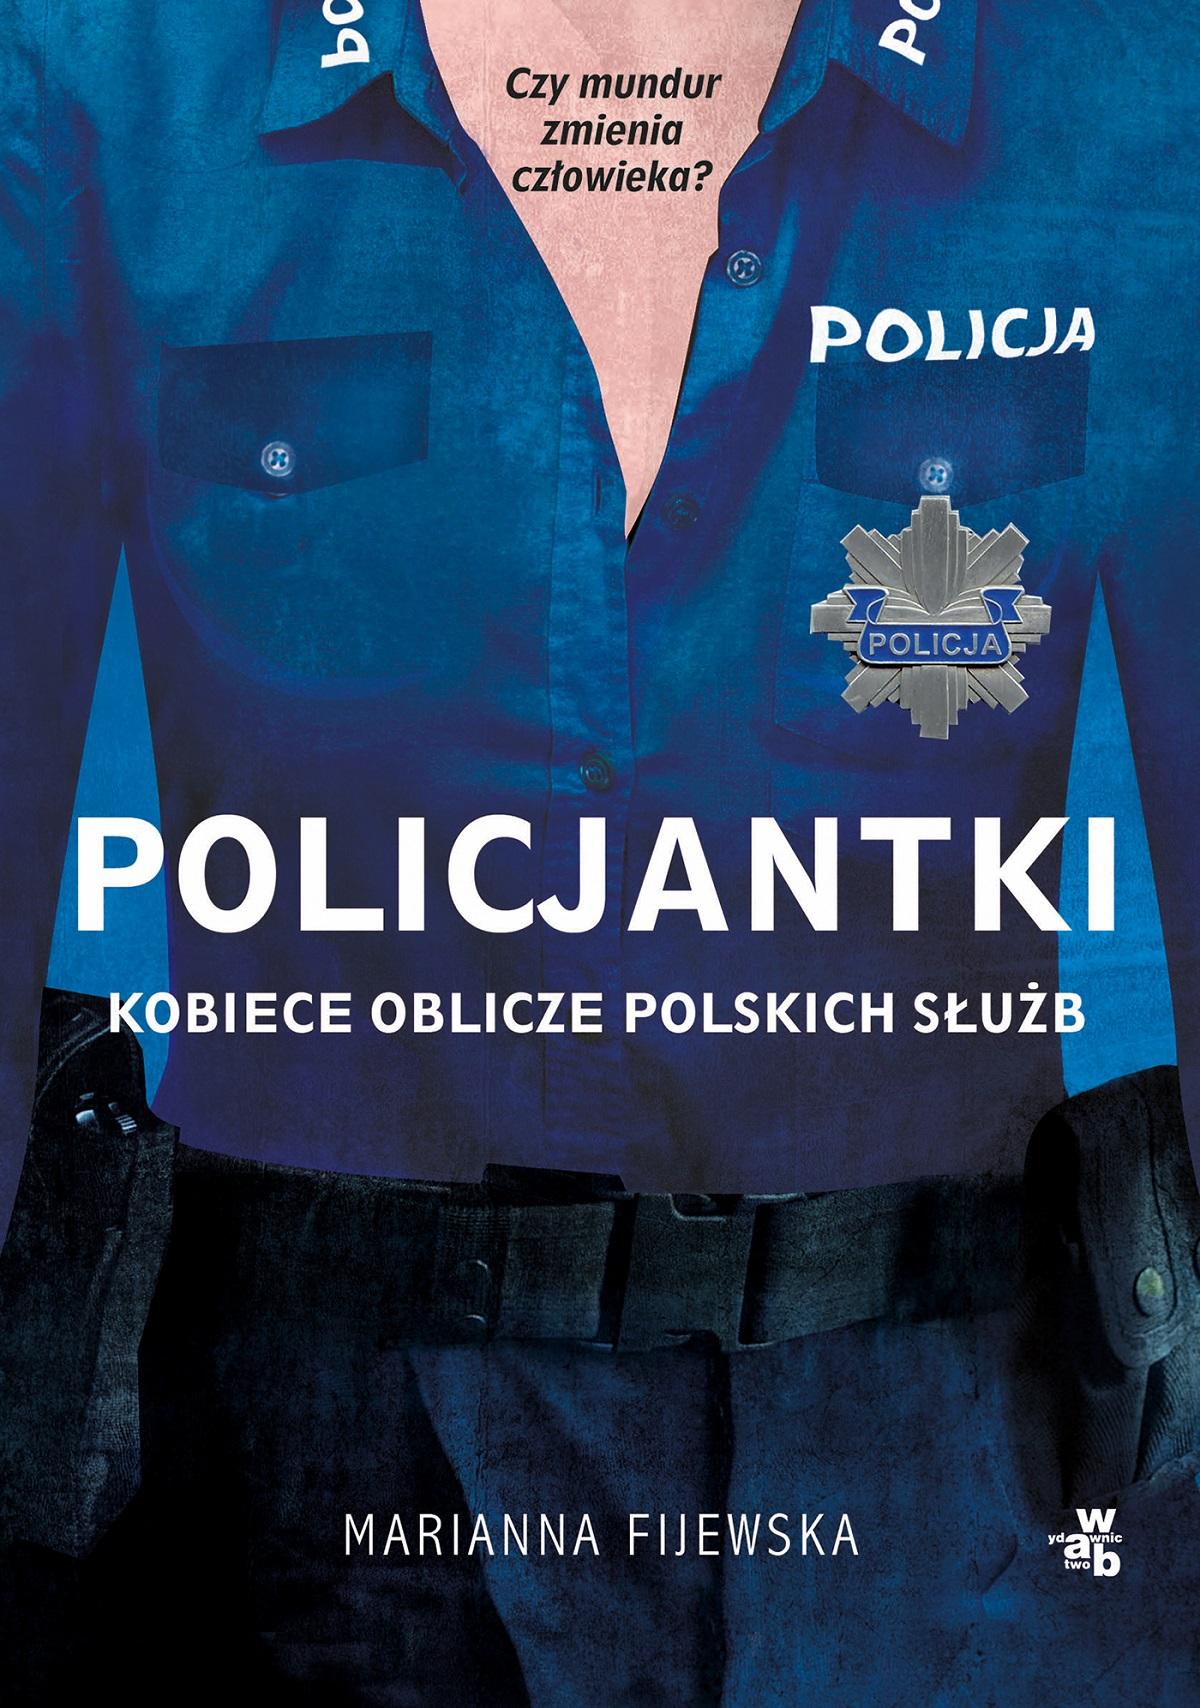 Fijewska Policjantki opinia class="wp-image-495190" 